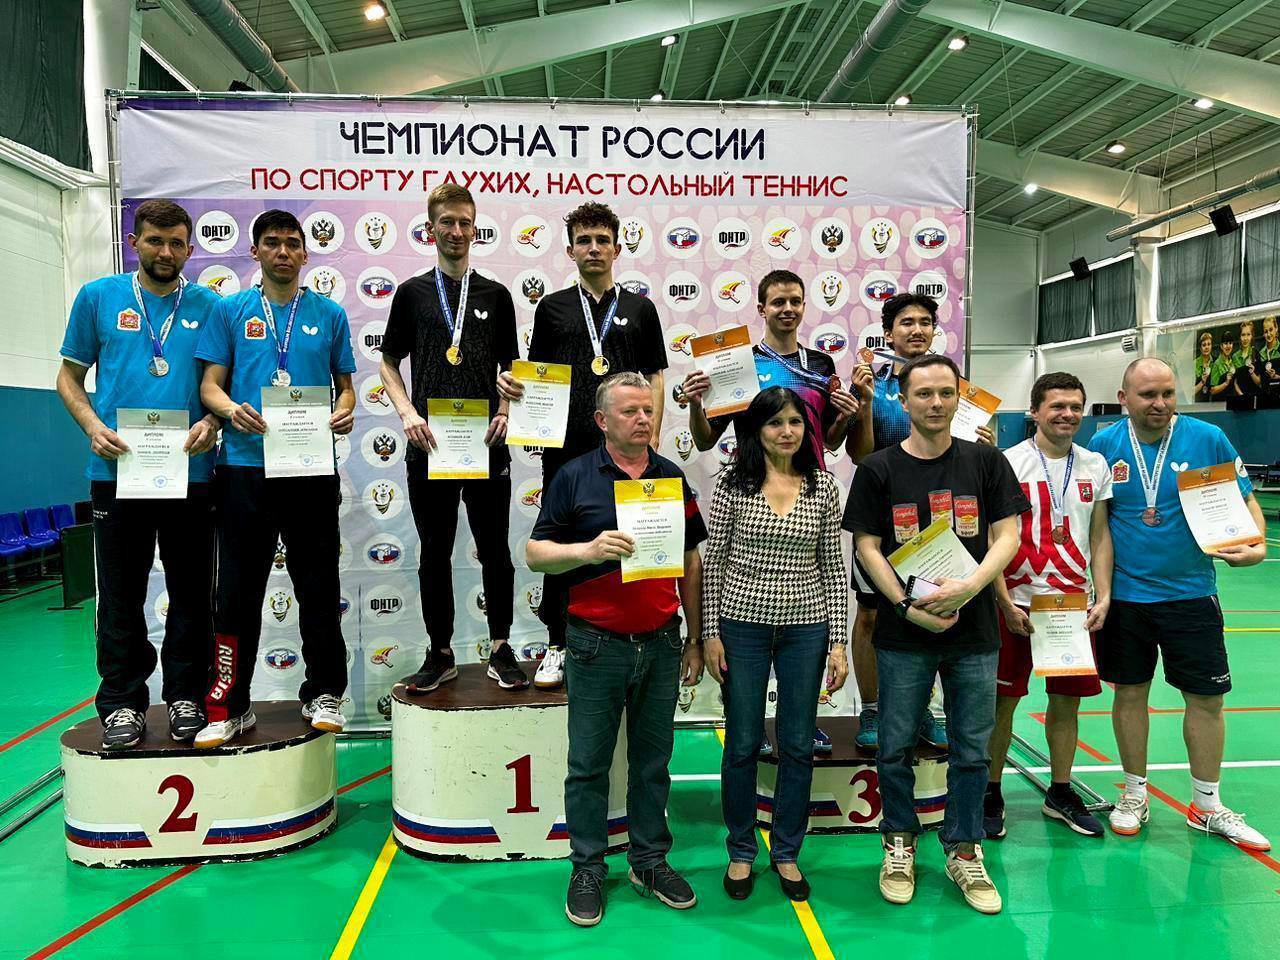 Оренбургские теннисисты взяли серебро чемпионата России по настольному теннису по спорту глухих